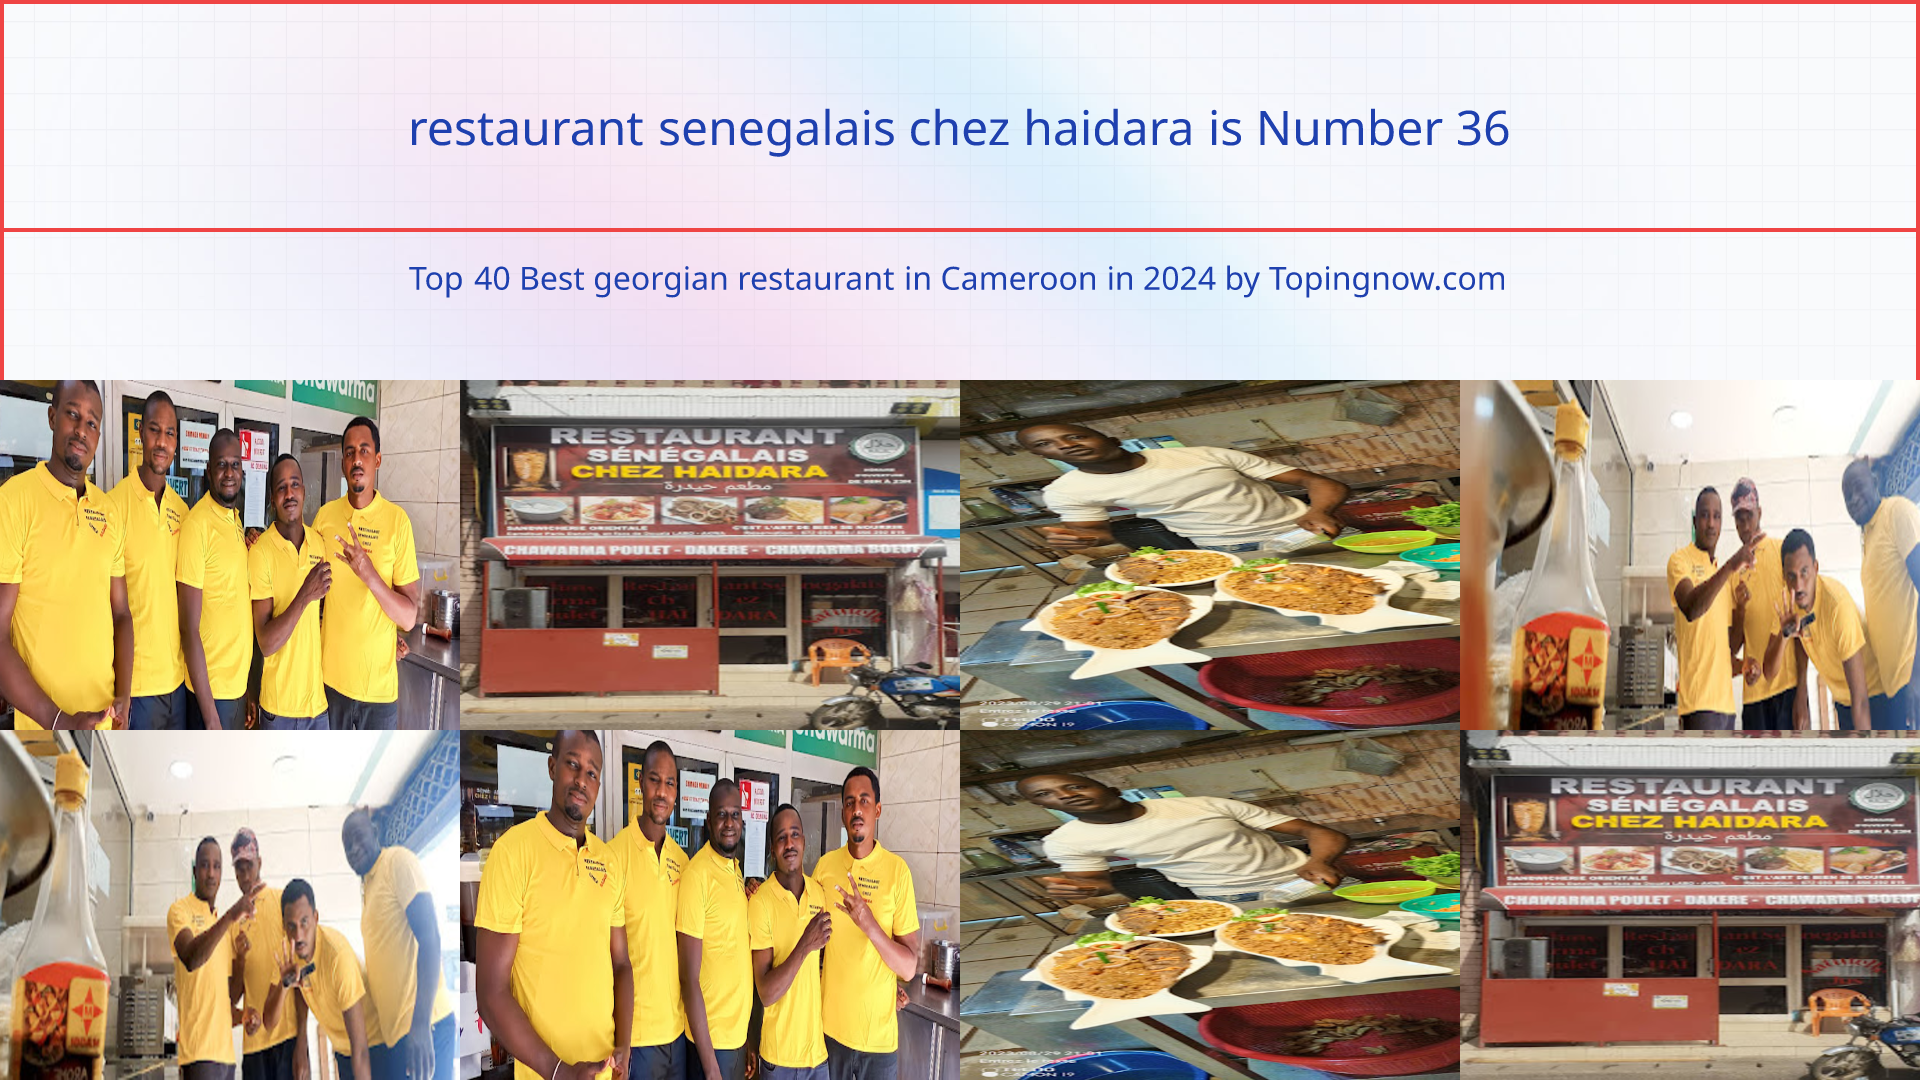 restaurant senegalais chez haidara: Top 40 Best georgian restaurant in Cameroon in 2024